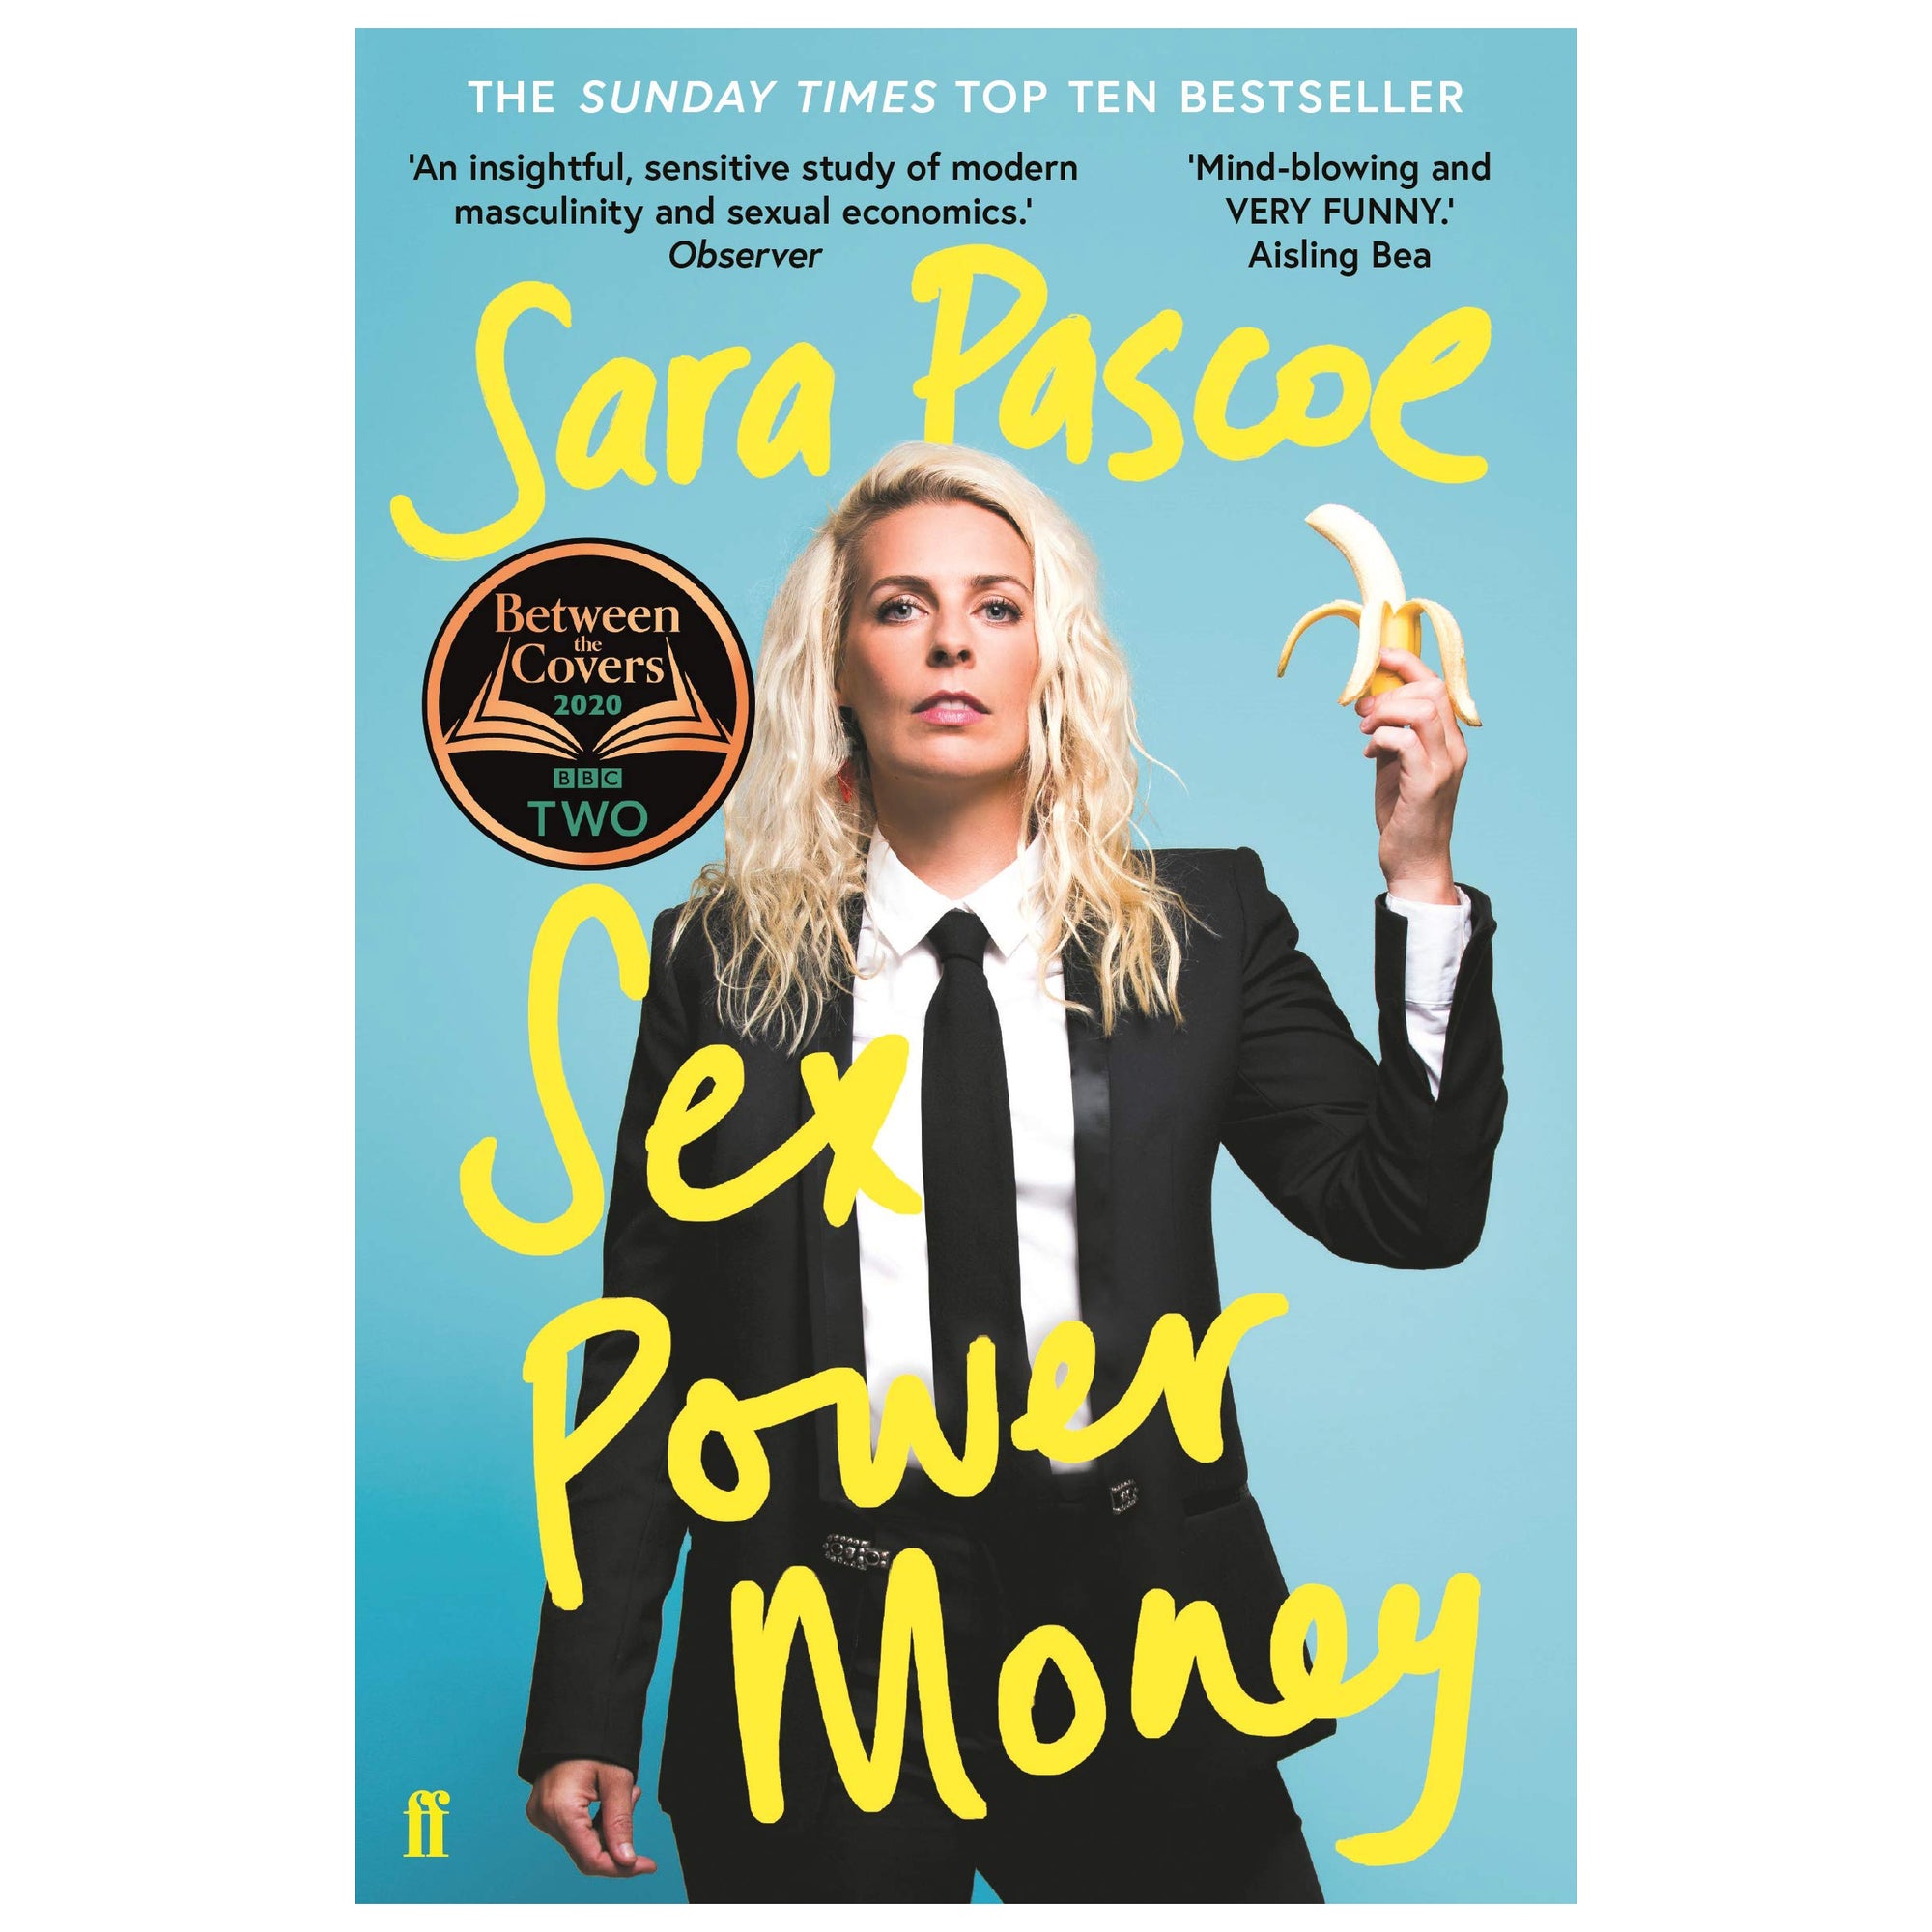 Sara Pascoe Sex Power Money